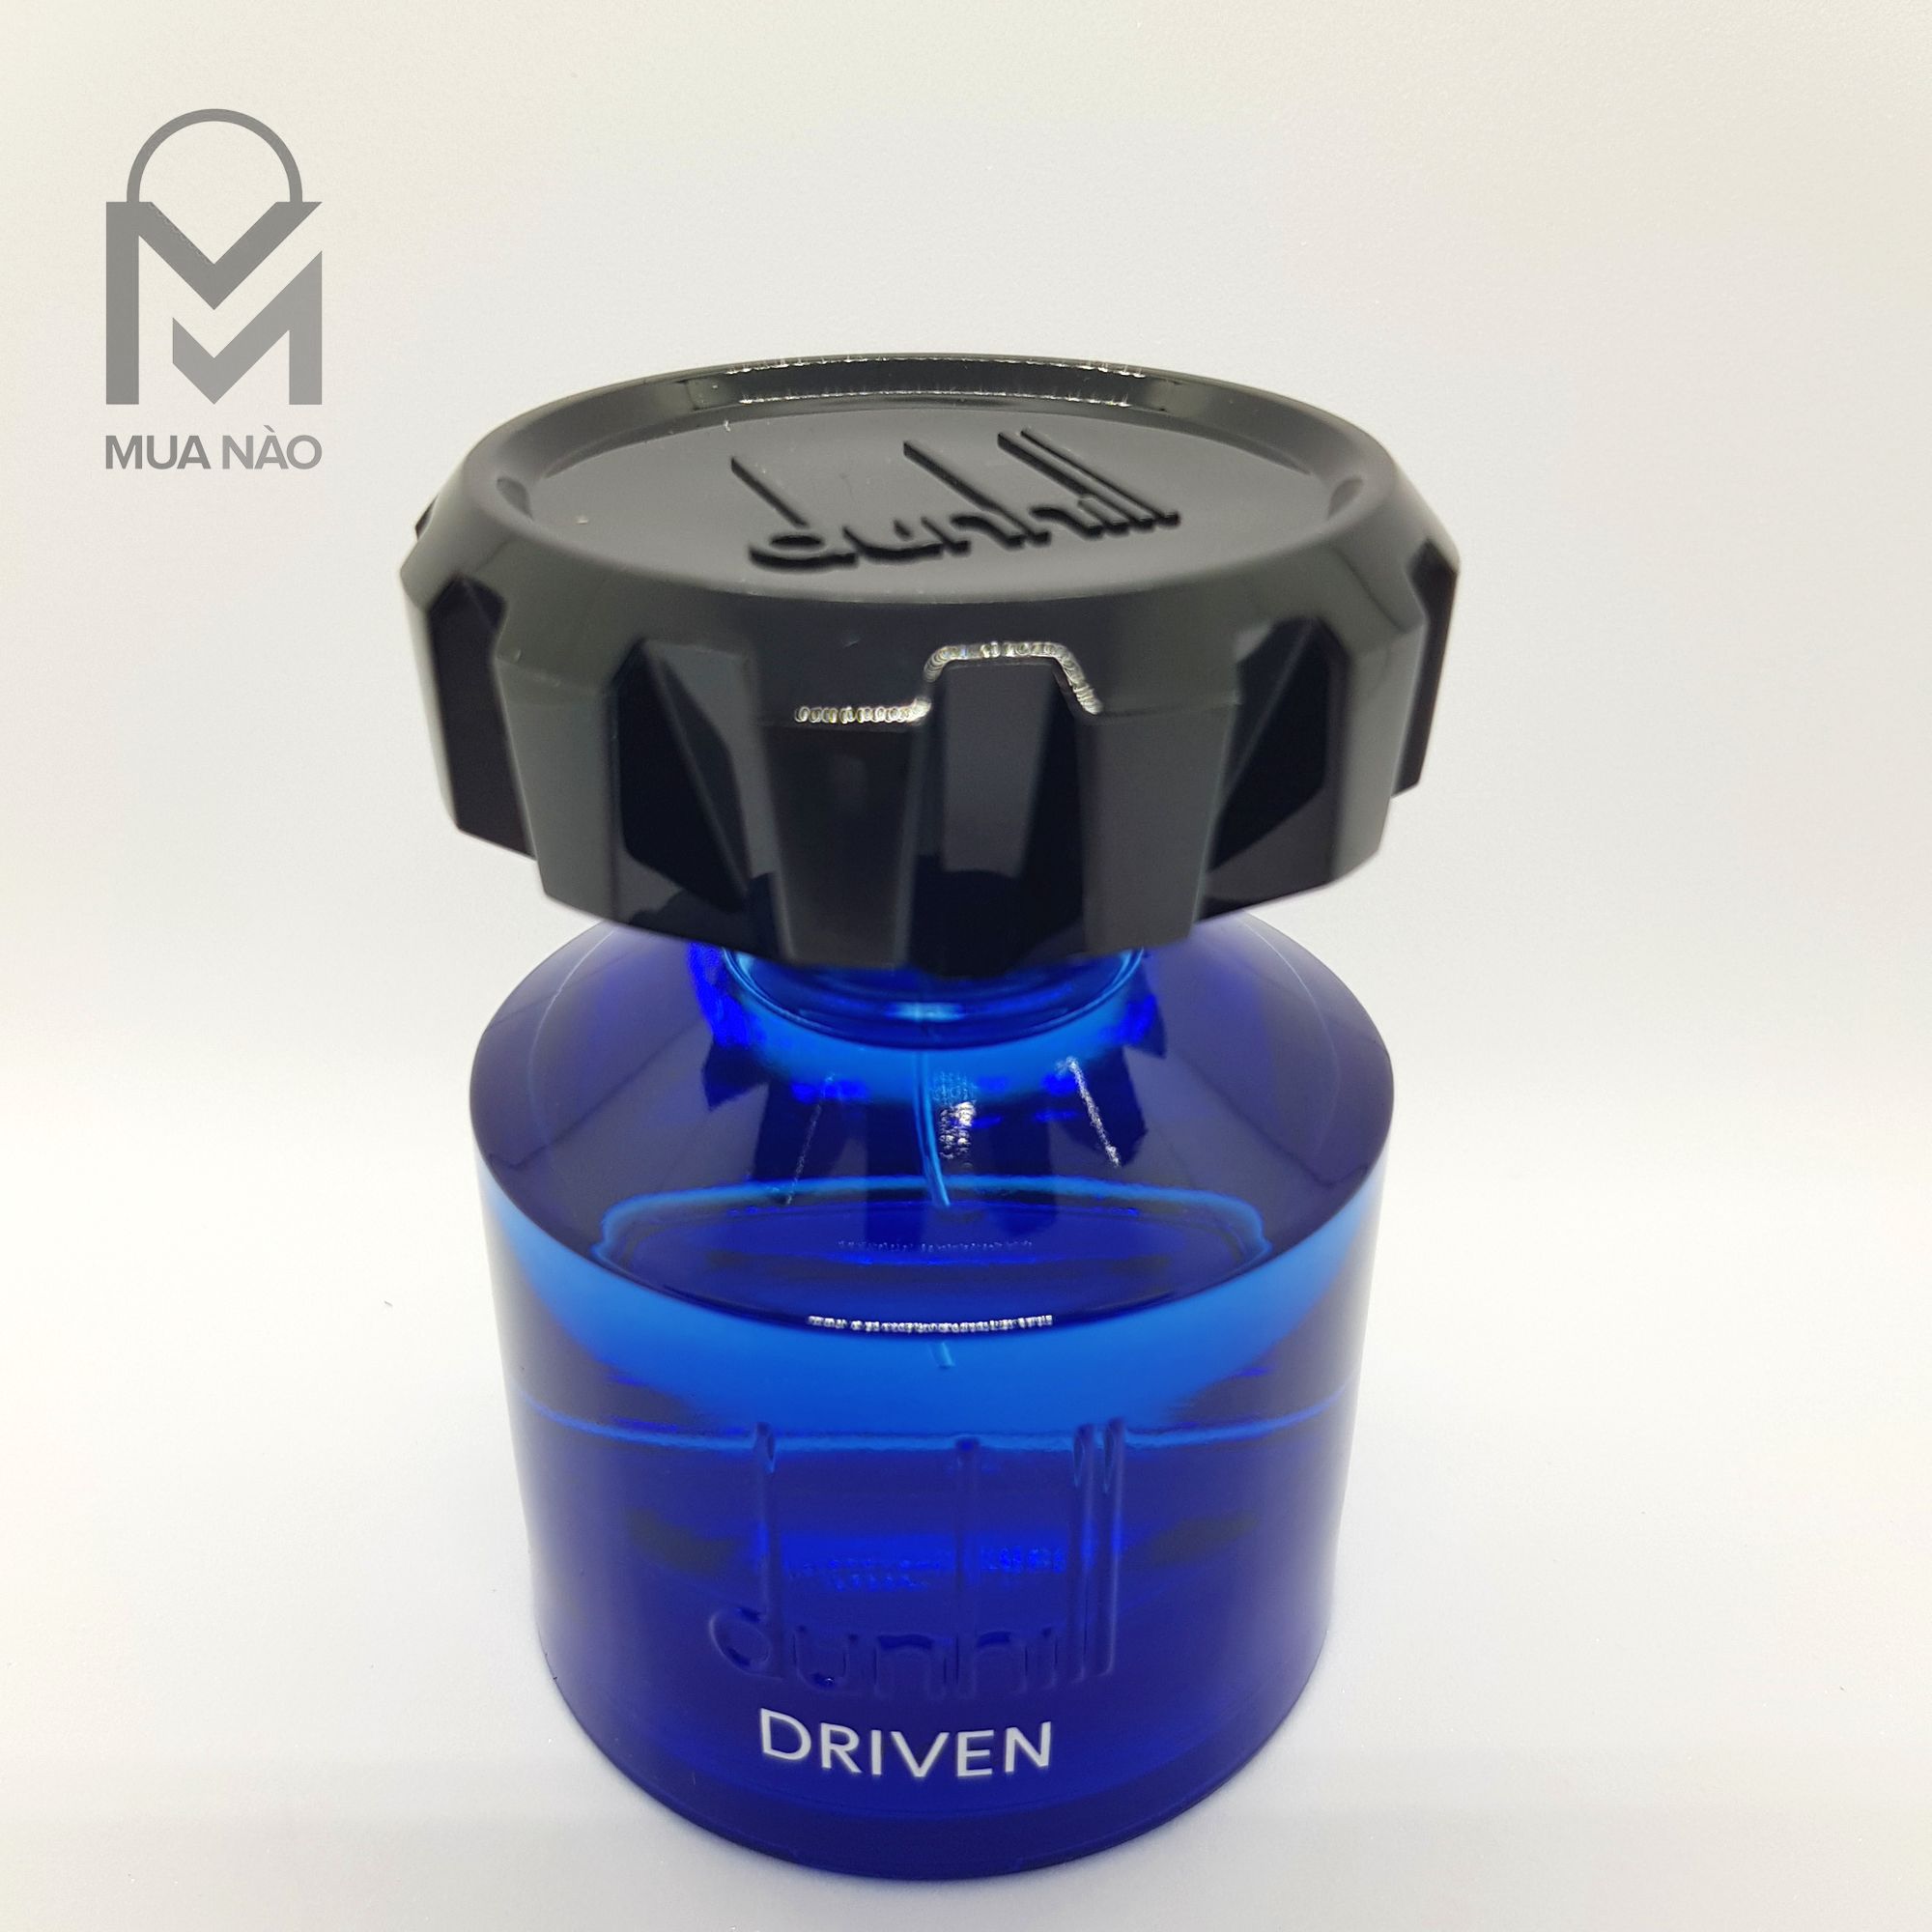 Nước hoa Driven Blue 60ml - 100ml - Nước hoa Nam giá rẻ hãng Dunhill